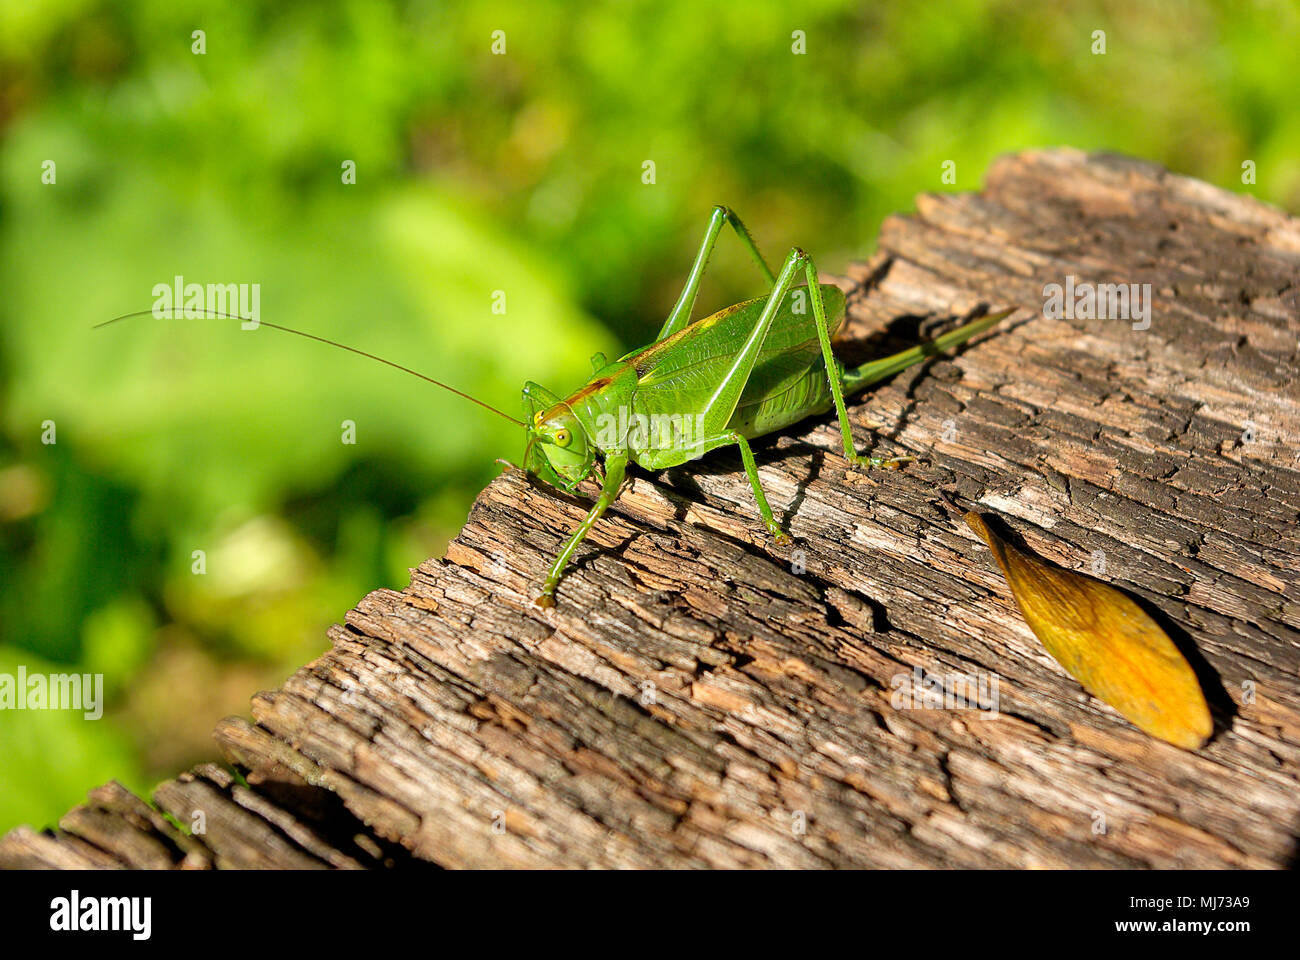 Frau Busch cricket Arten (Tettigonia) auf einem Stück verwittertes Holz. Stockfoto